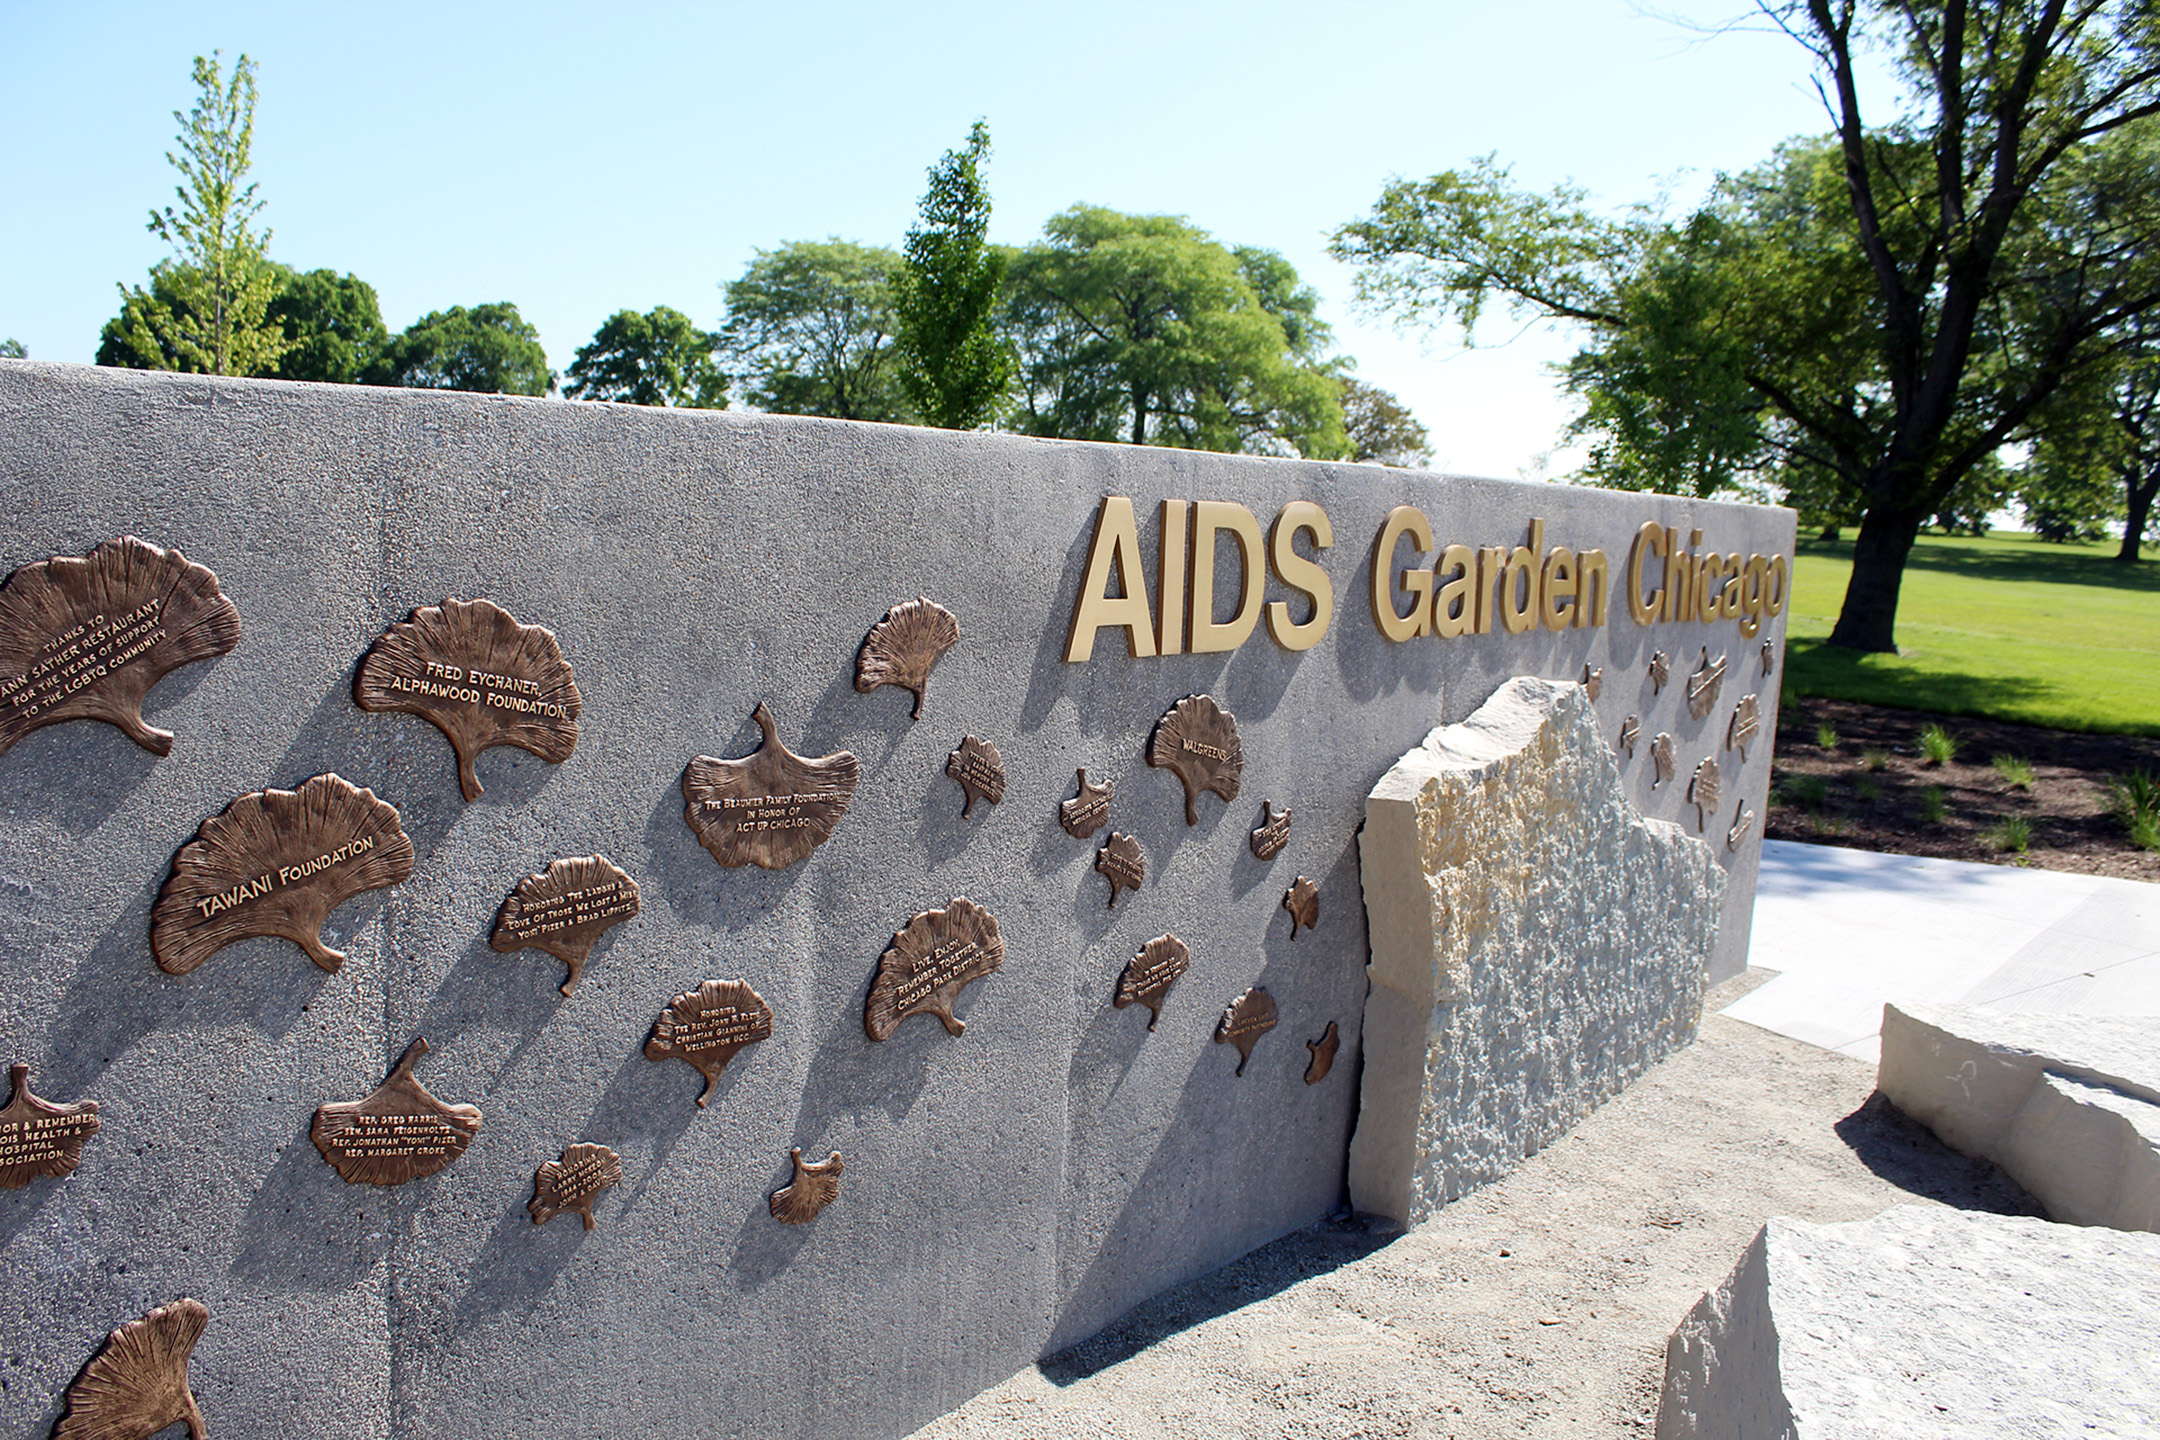 AIDS Garden Chicago gate